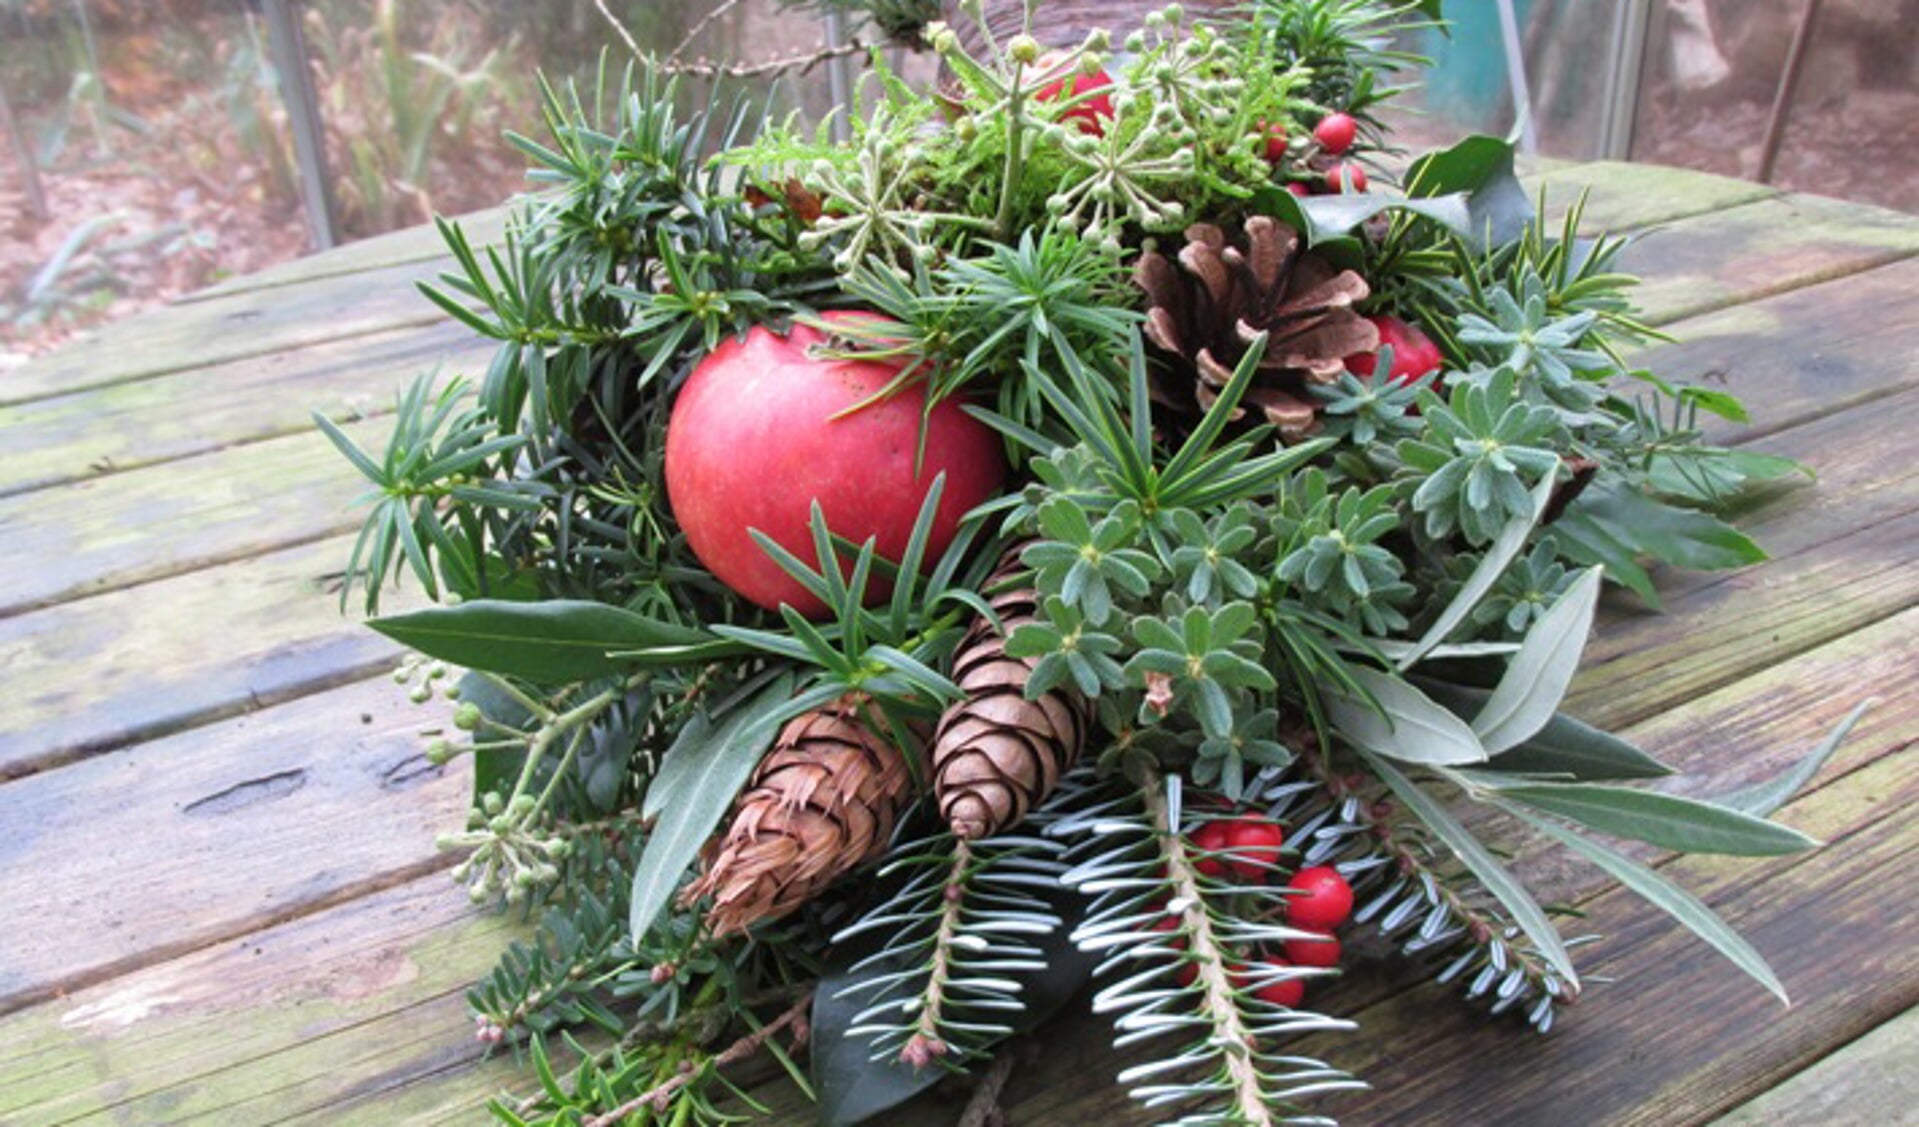 Kerststukje maken bij Dierendorp op donderdag 12 december.